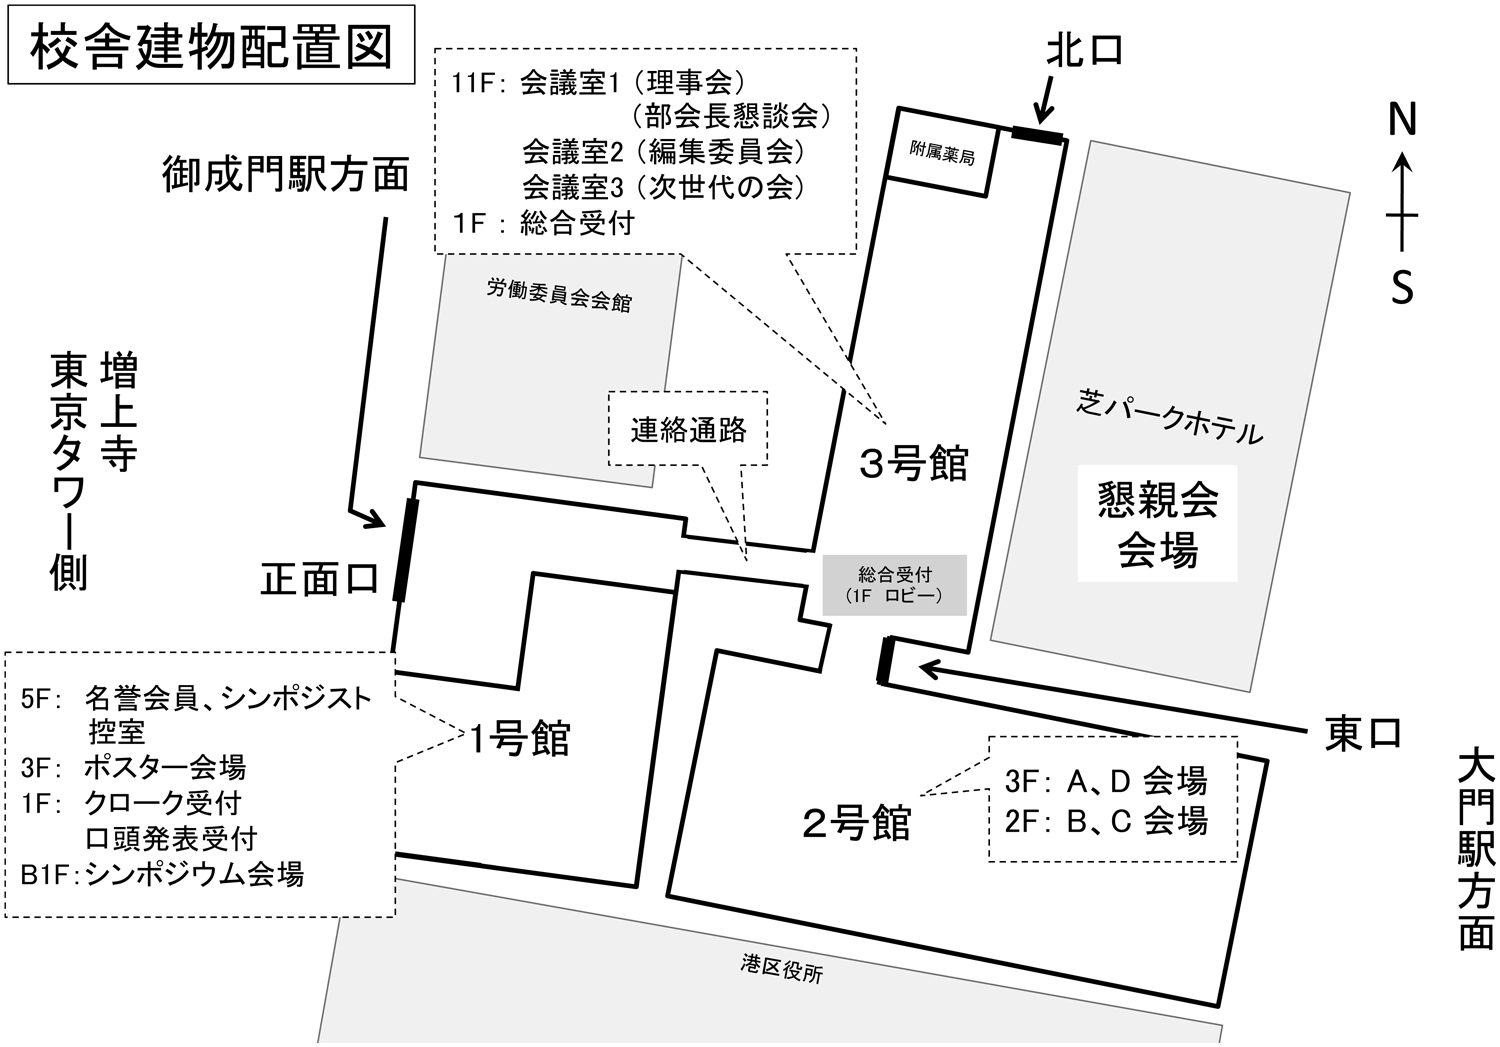 room1